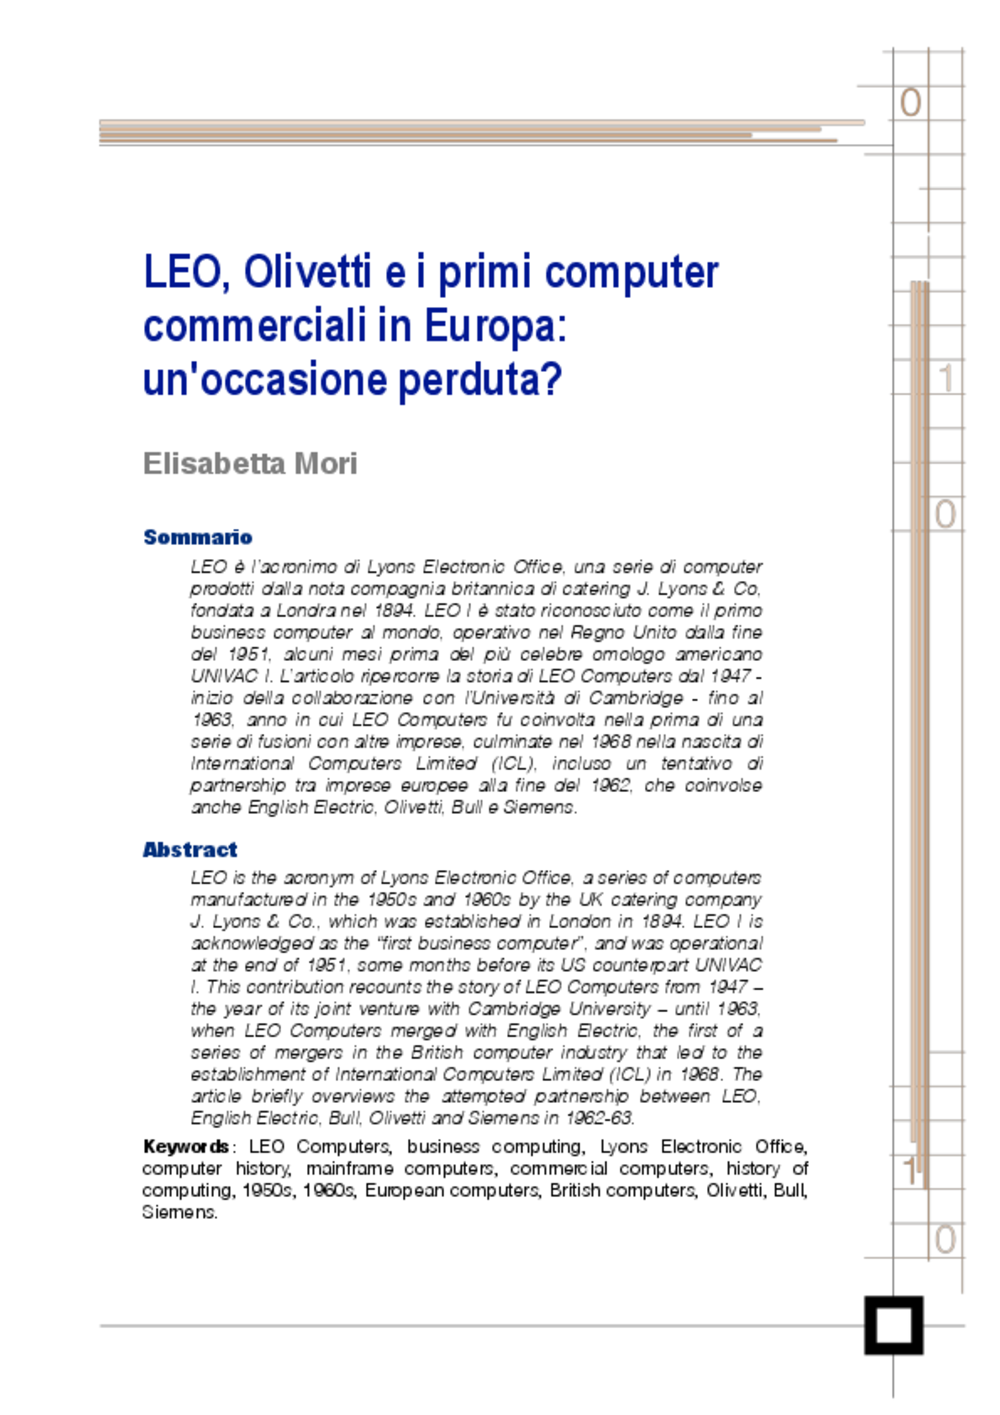 Article: LEO, Olivetti e i primi computercommerciali in Europa:un'occasione perduta?